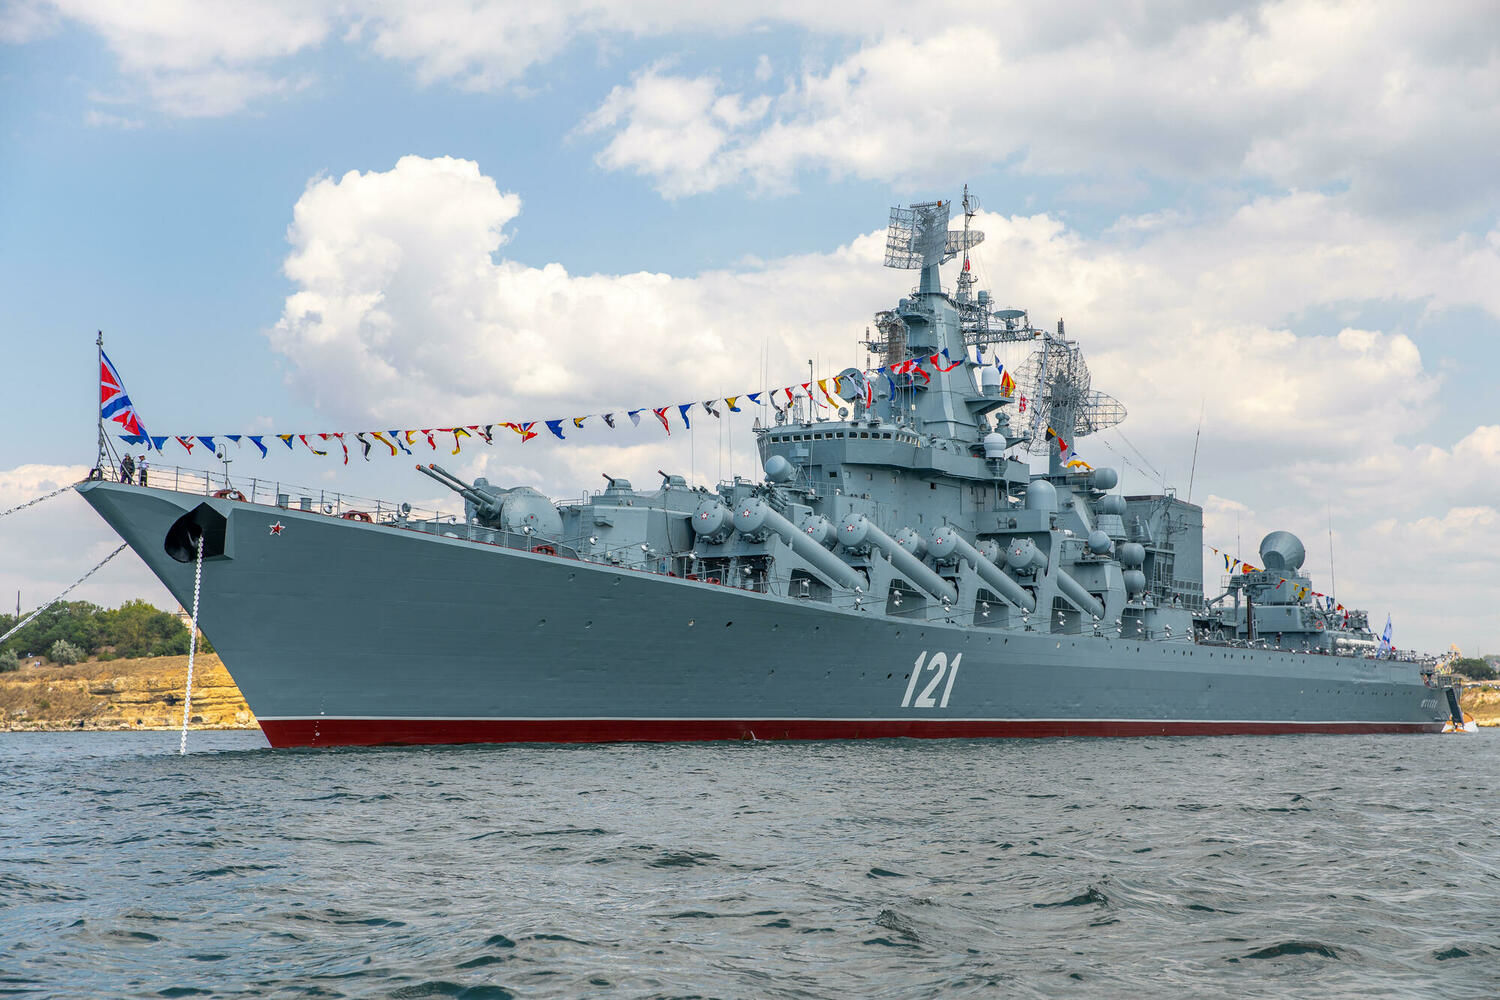 Експерти вивчили знімки крейсера "Москва" та дійшли низки висновків